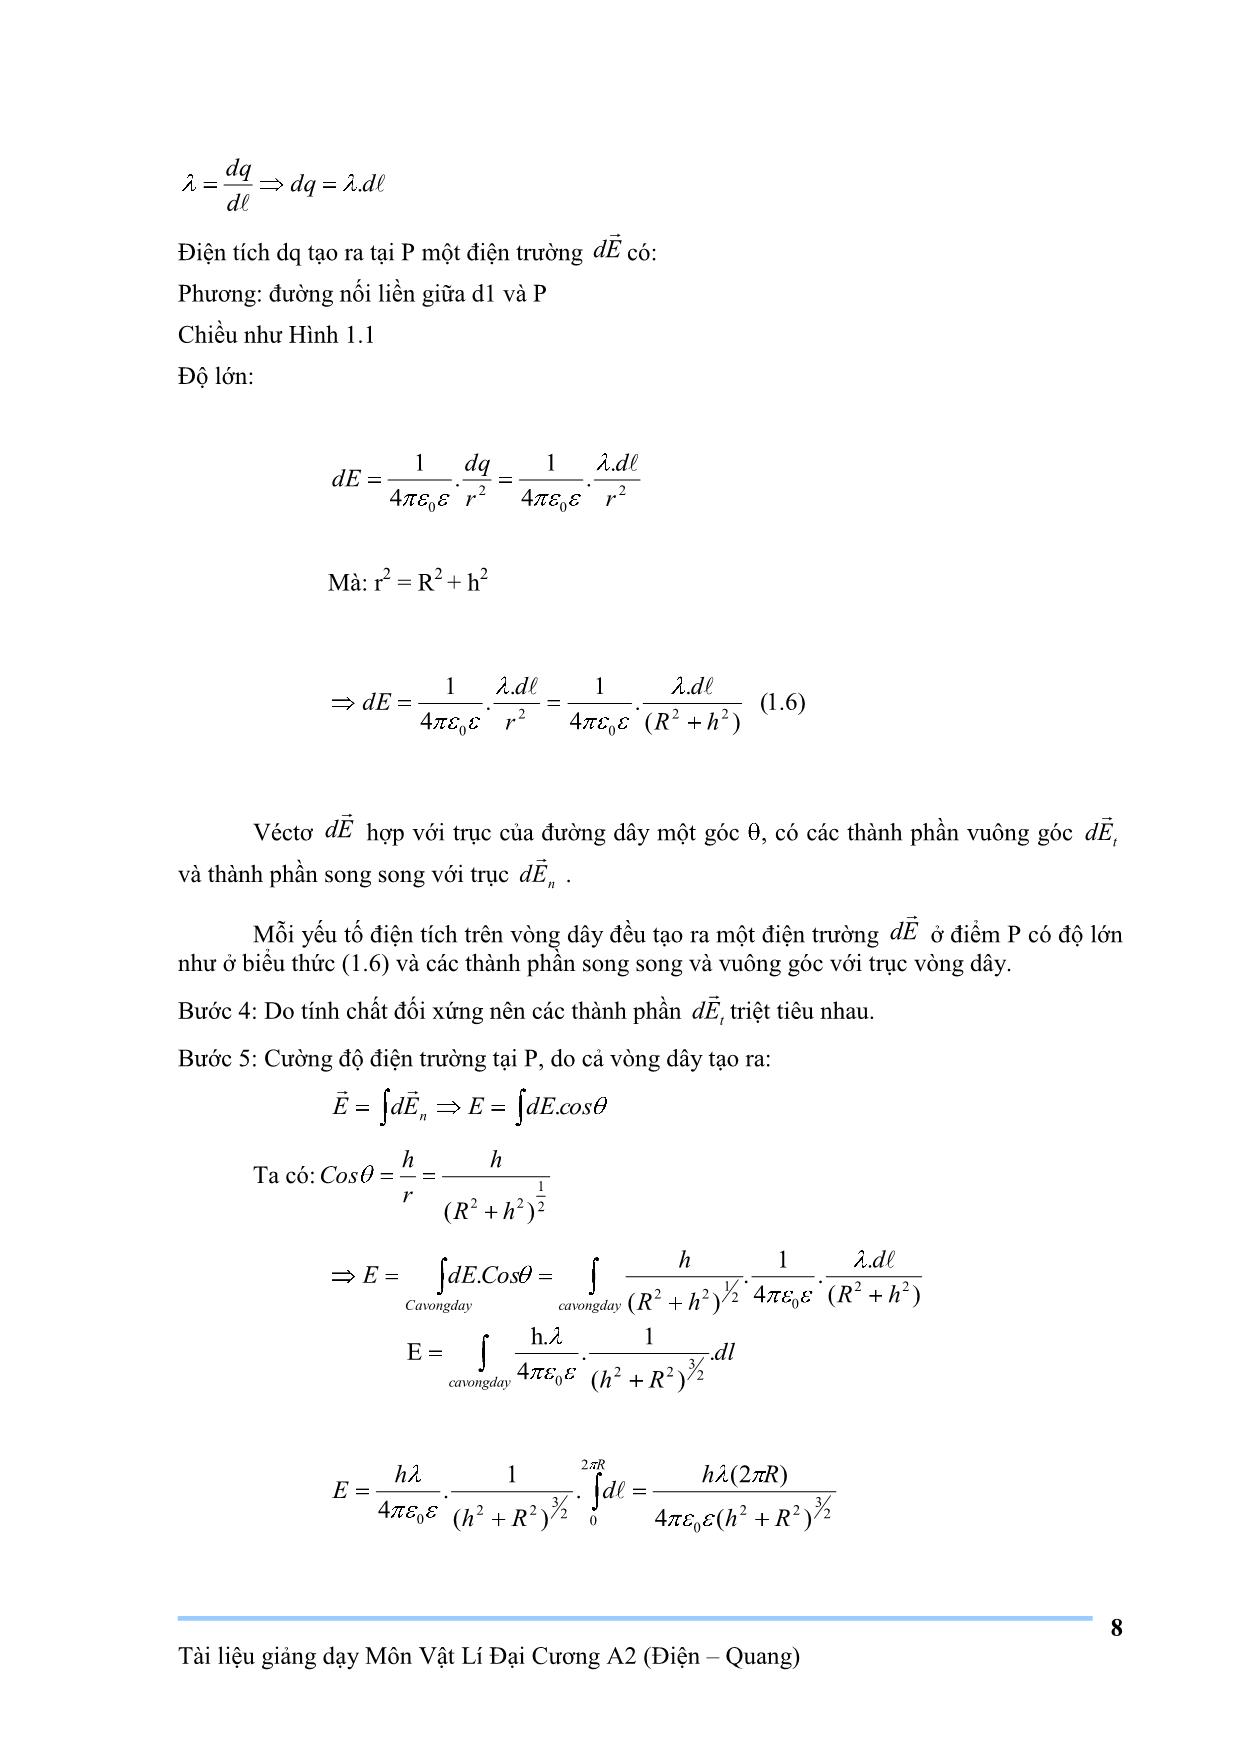 Giáo trình Vật lý đại cương A2 trang 8